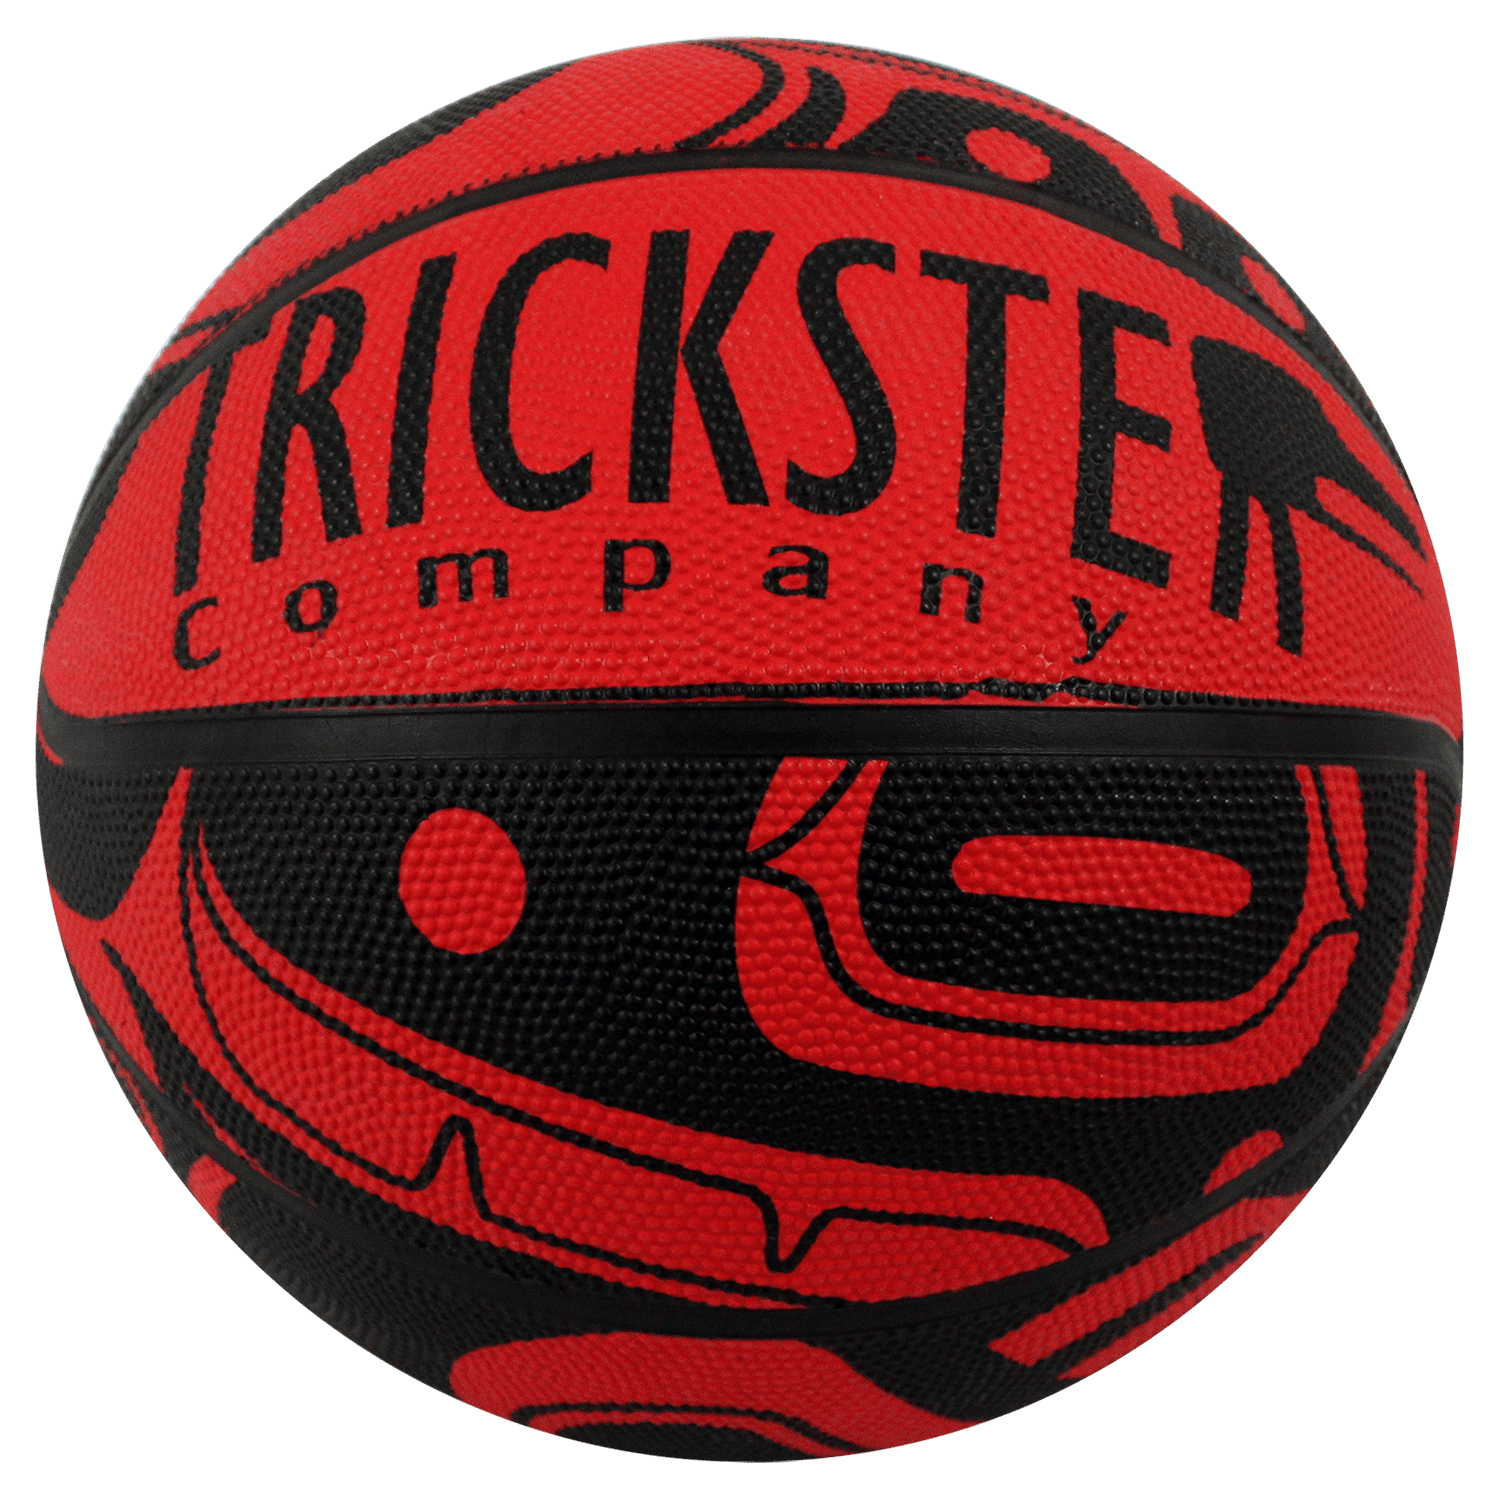 Custom Rubber Basketball